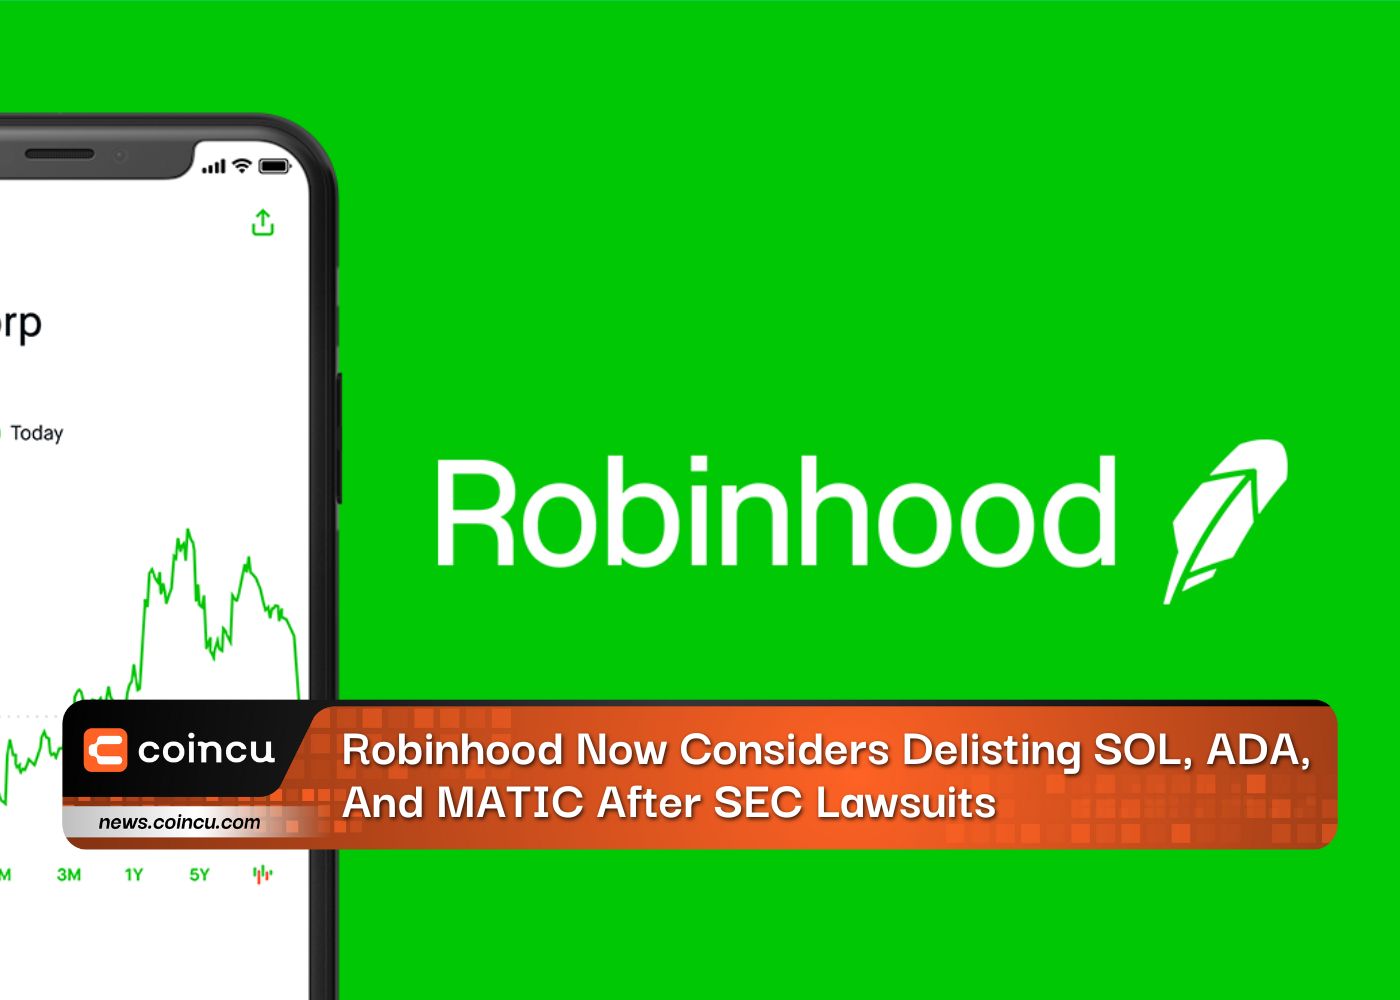 Robinhood اکنون در نظر دارد SOL، ADA، و MATIC را پس از شکایت های SEC از فهرست حذف کند: گزارش